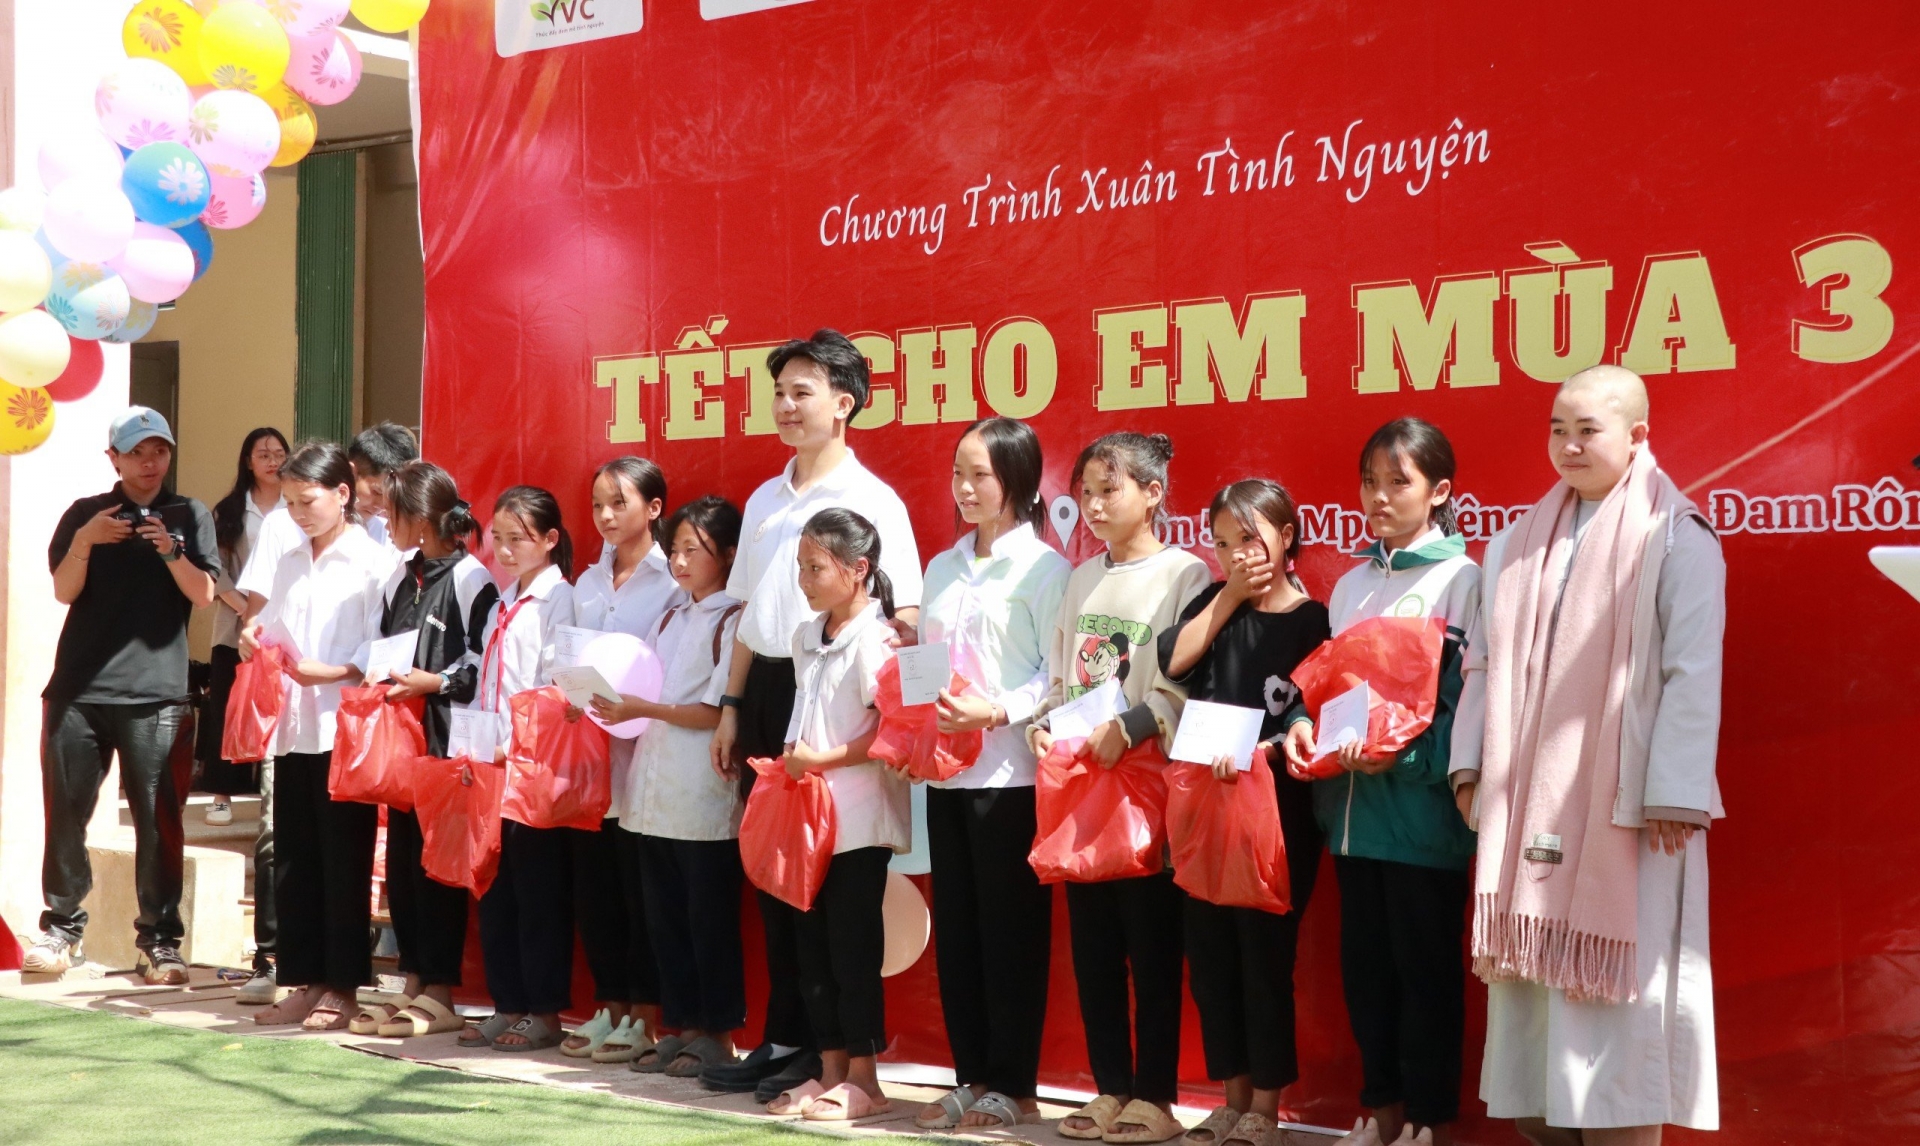 Đam Rông tổ chức chương trình Xuân tình nguyện tại điểm trường Đạ Mpô